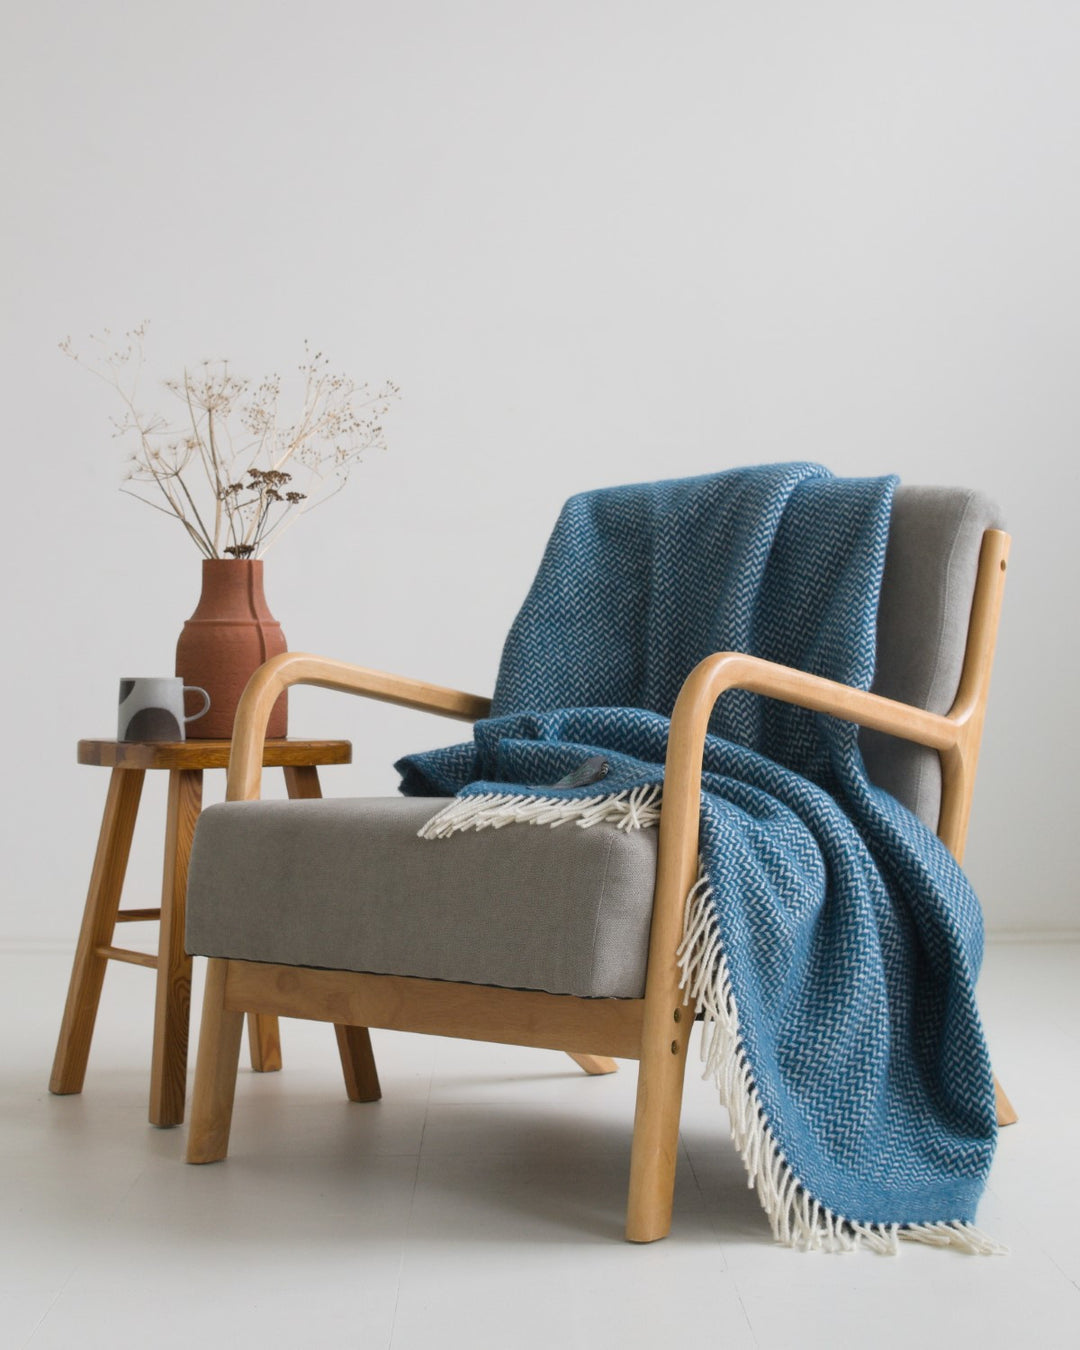 Blue herringbone wool blanket draped over a grey lounge chair